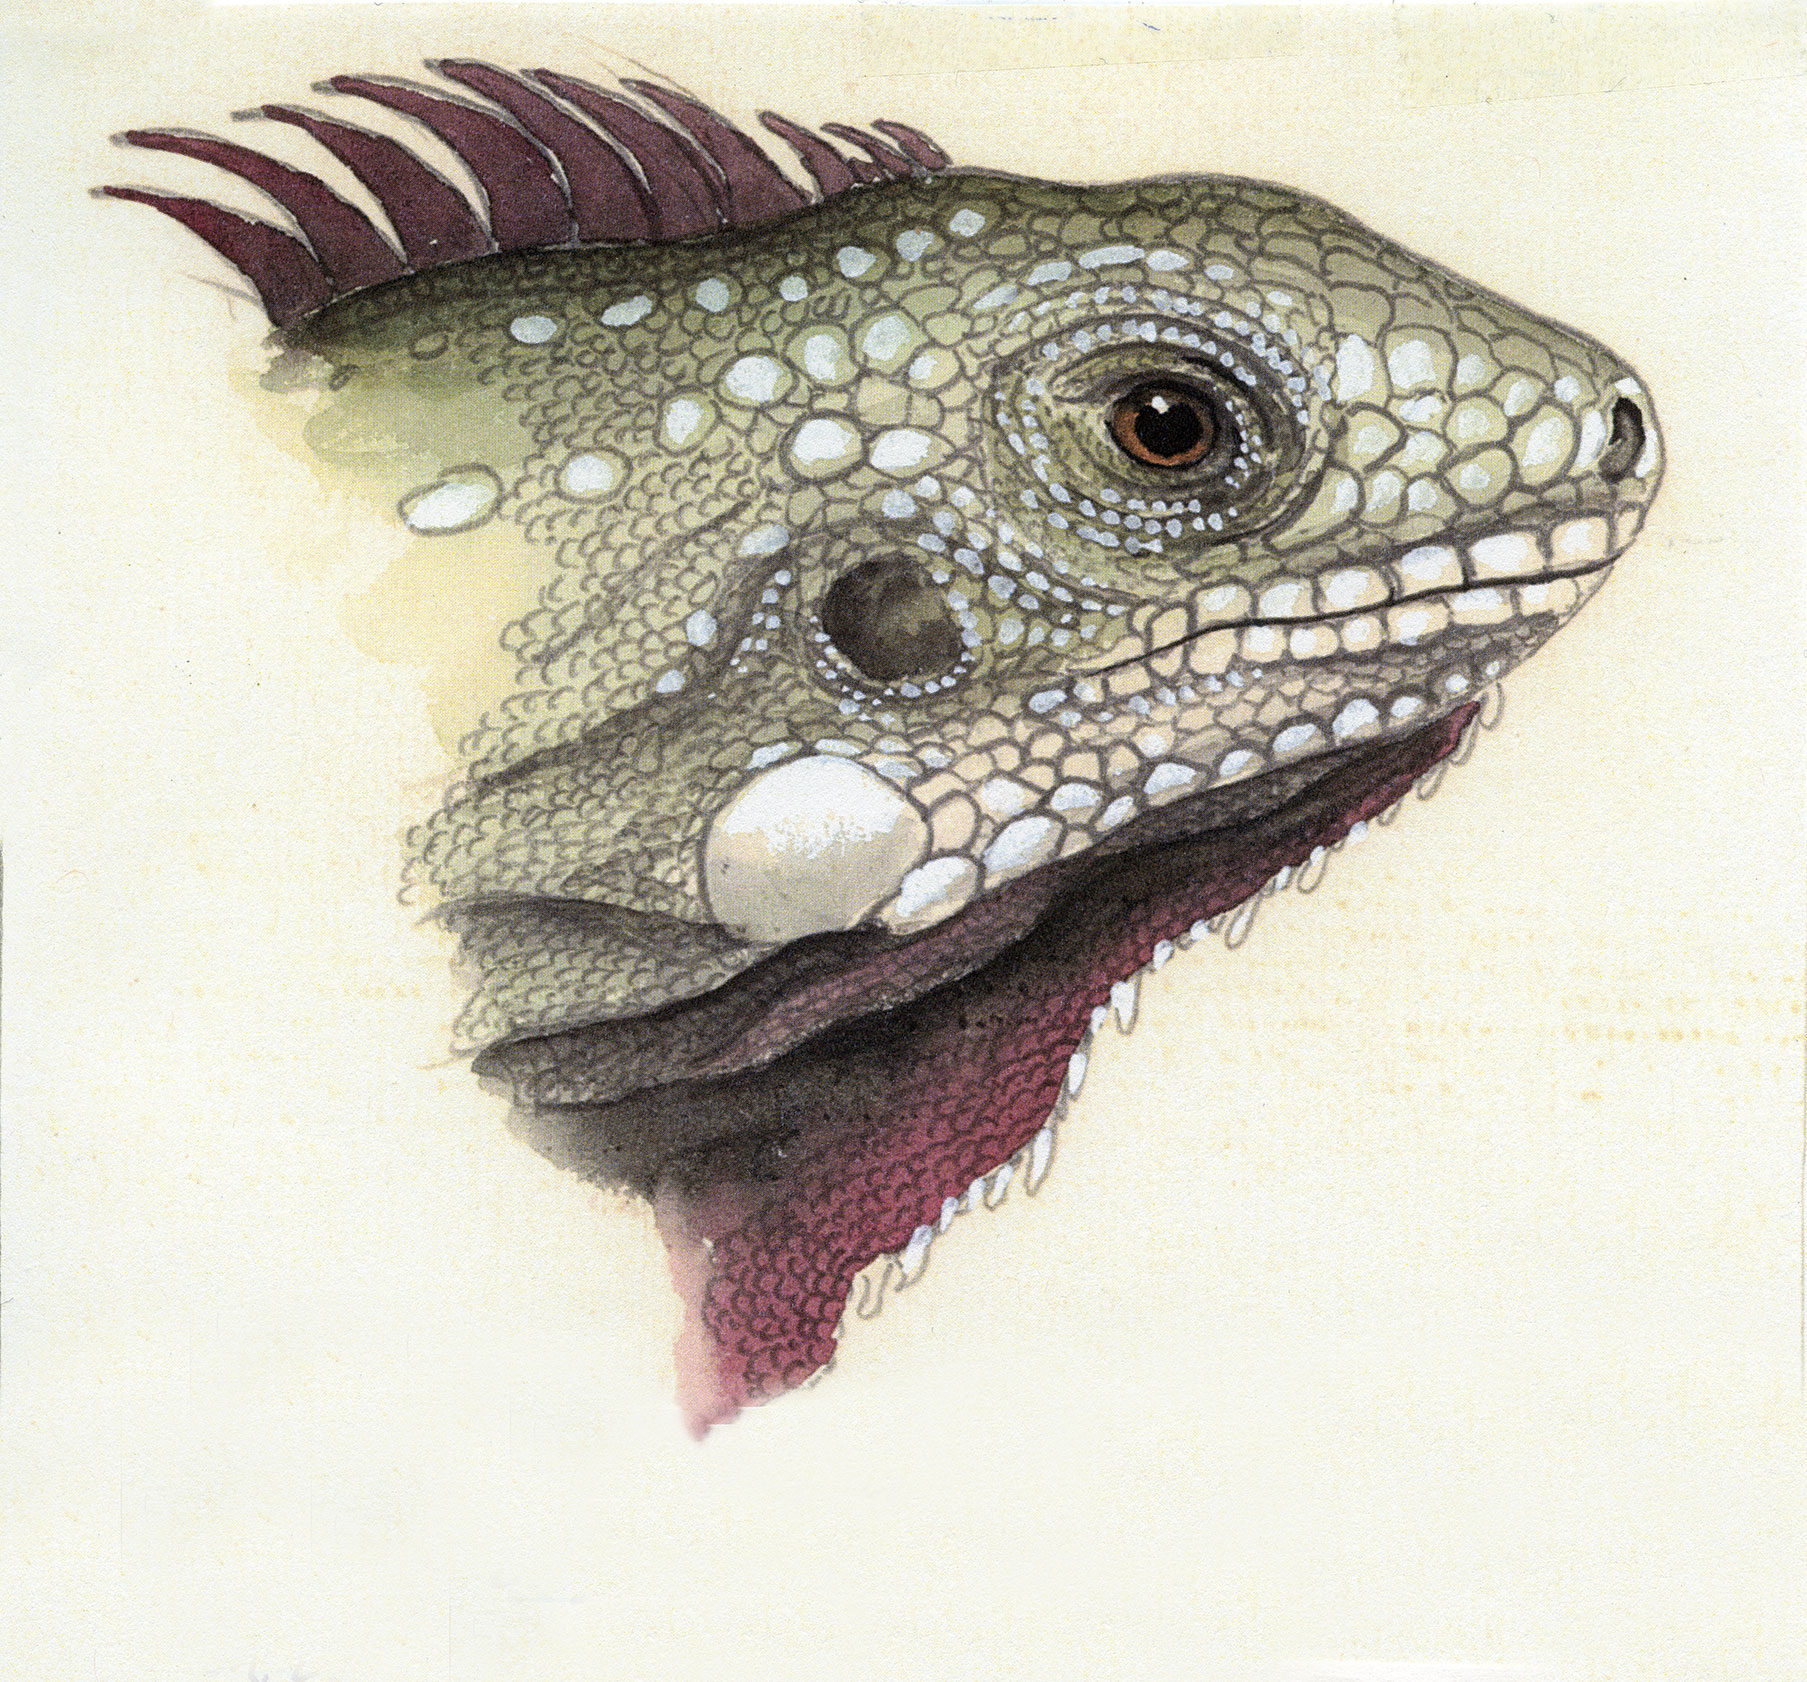 An illustration of an iguana.